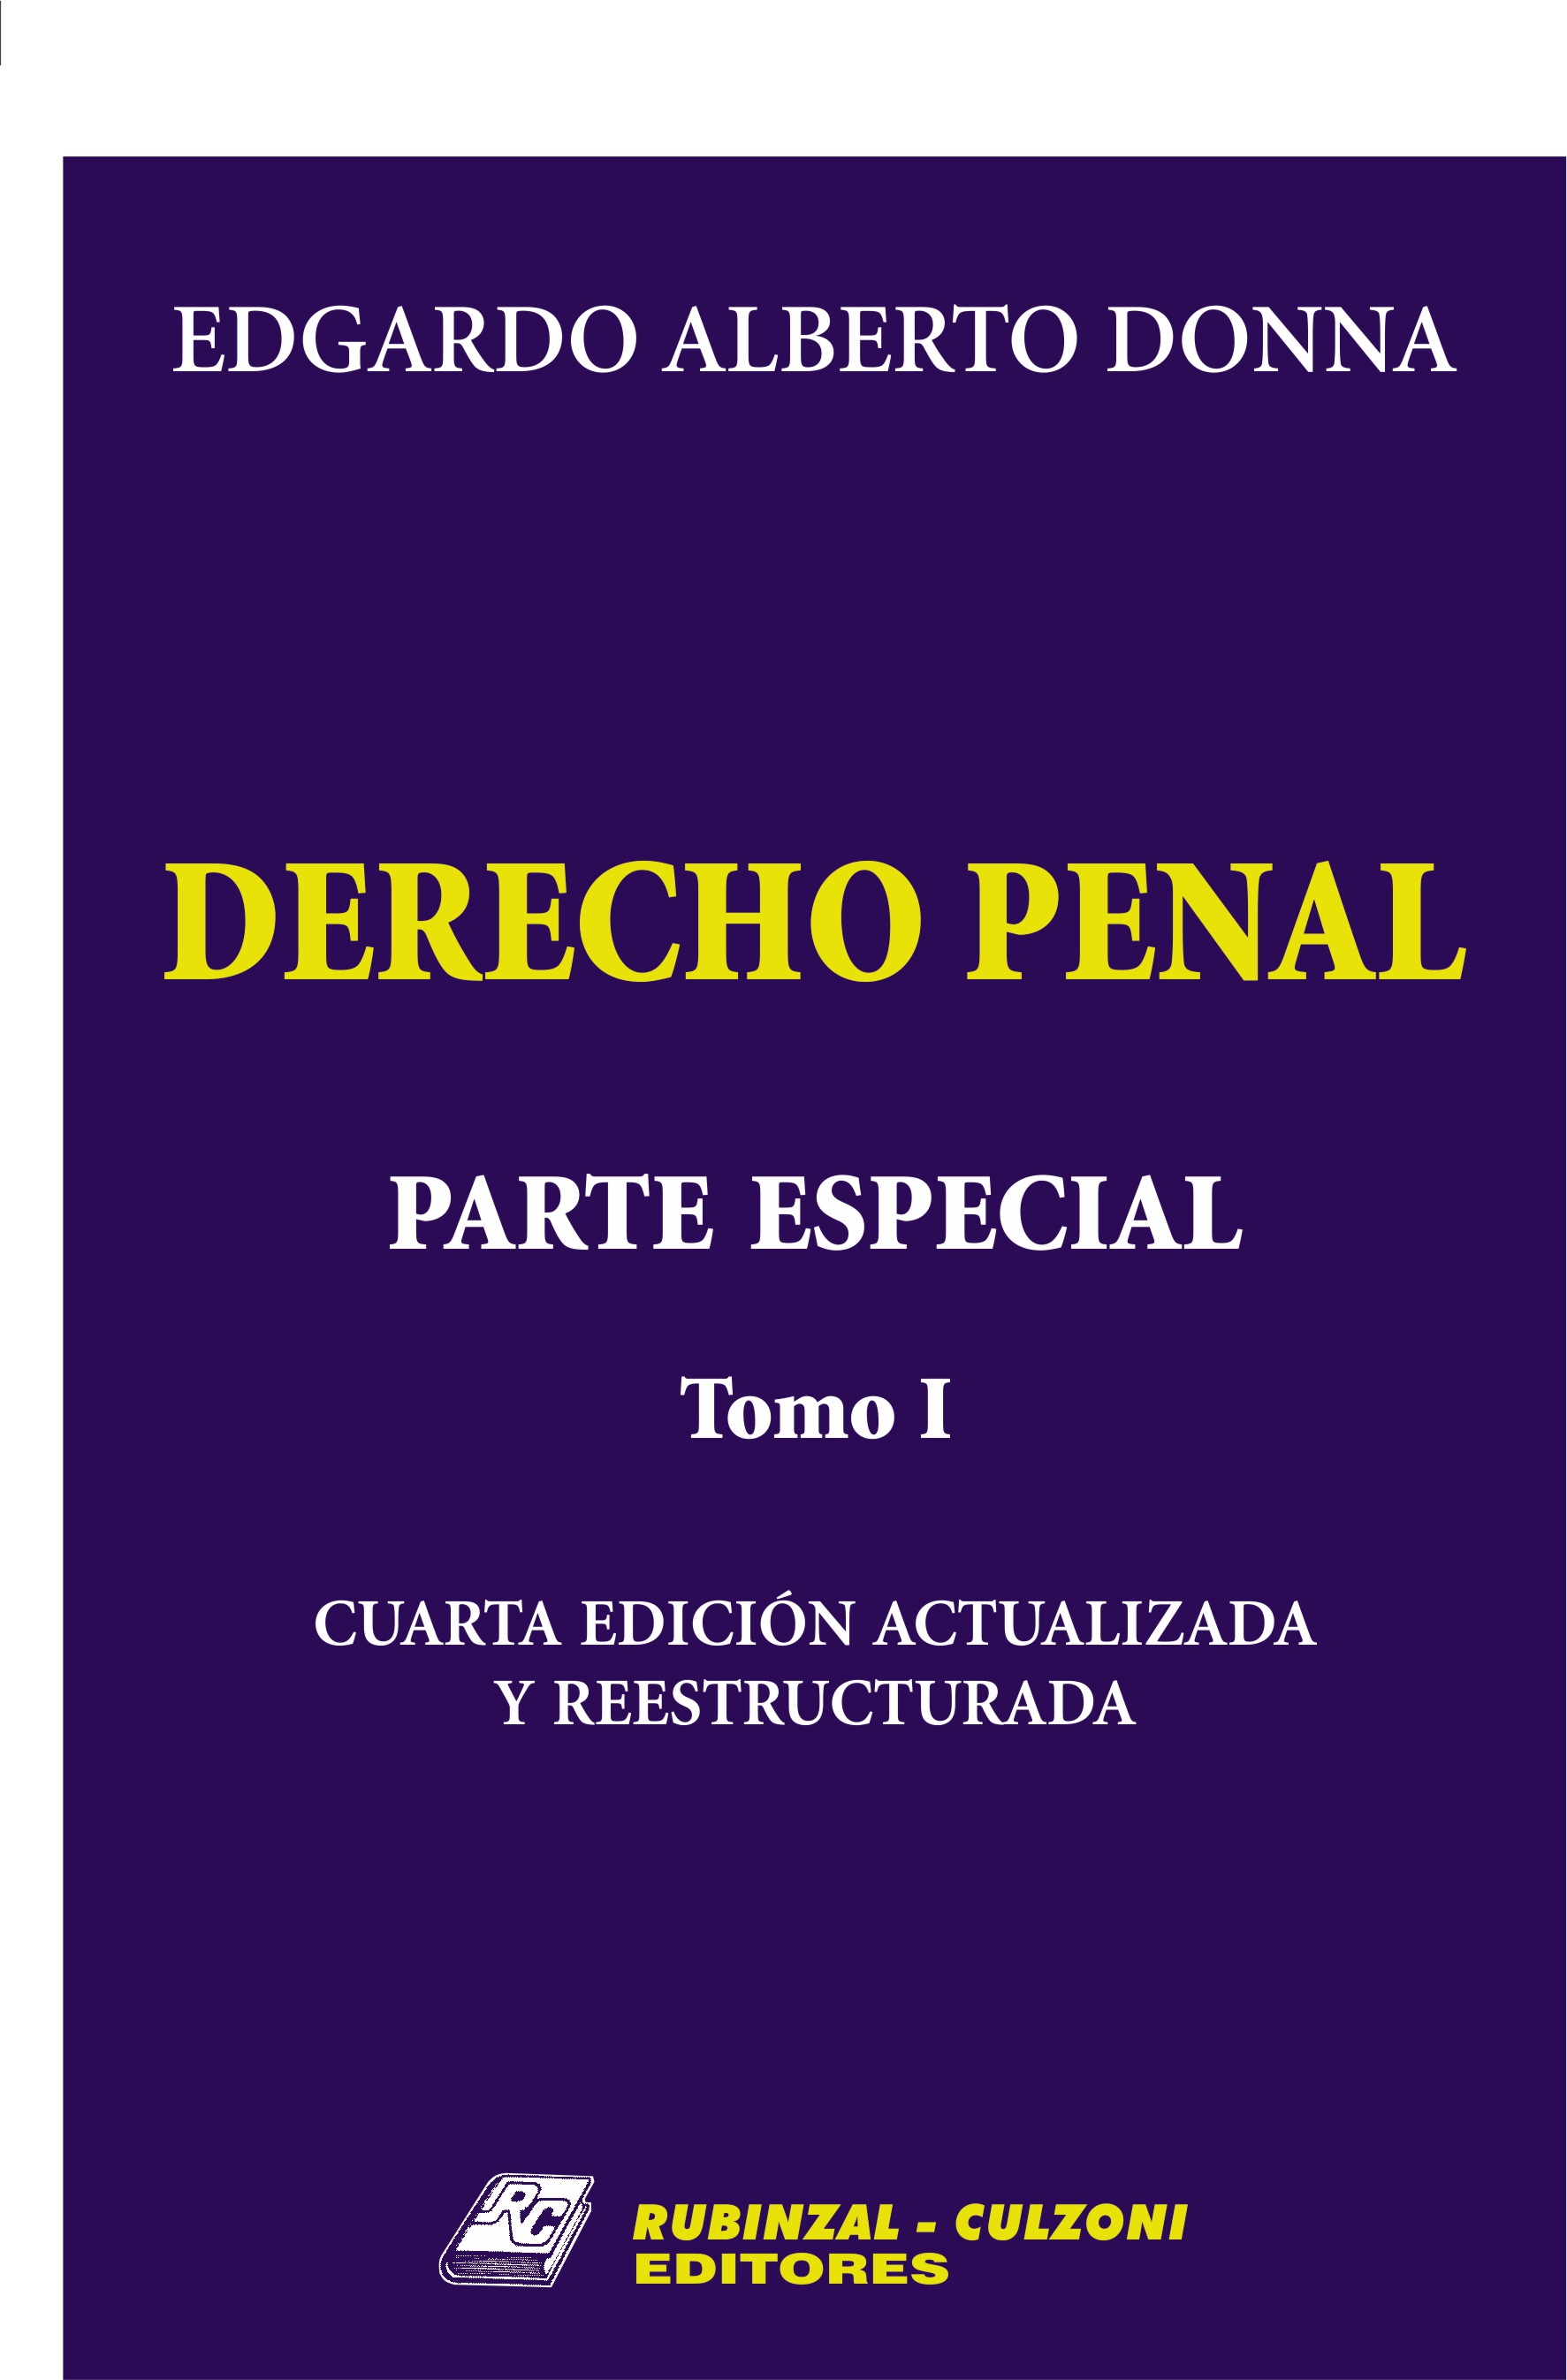 Derecho Penal. Parte Especial. - Tomo I. 4ª Edición actualizada y reestructurada.